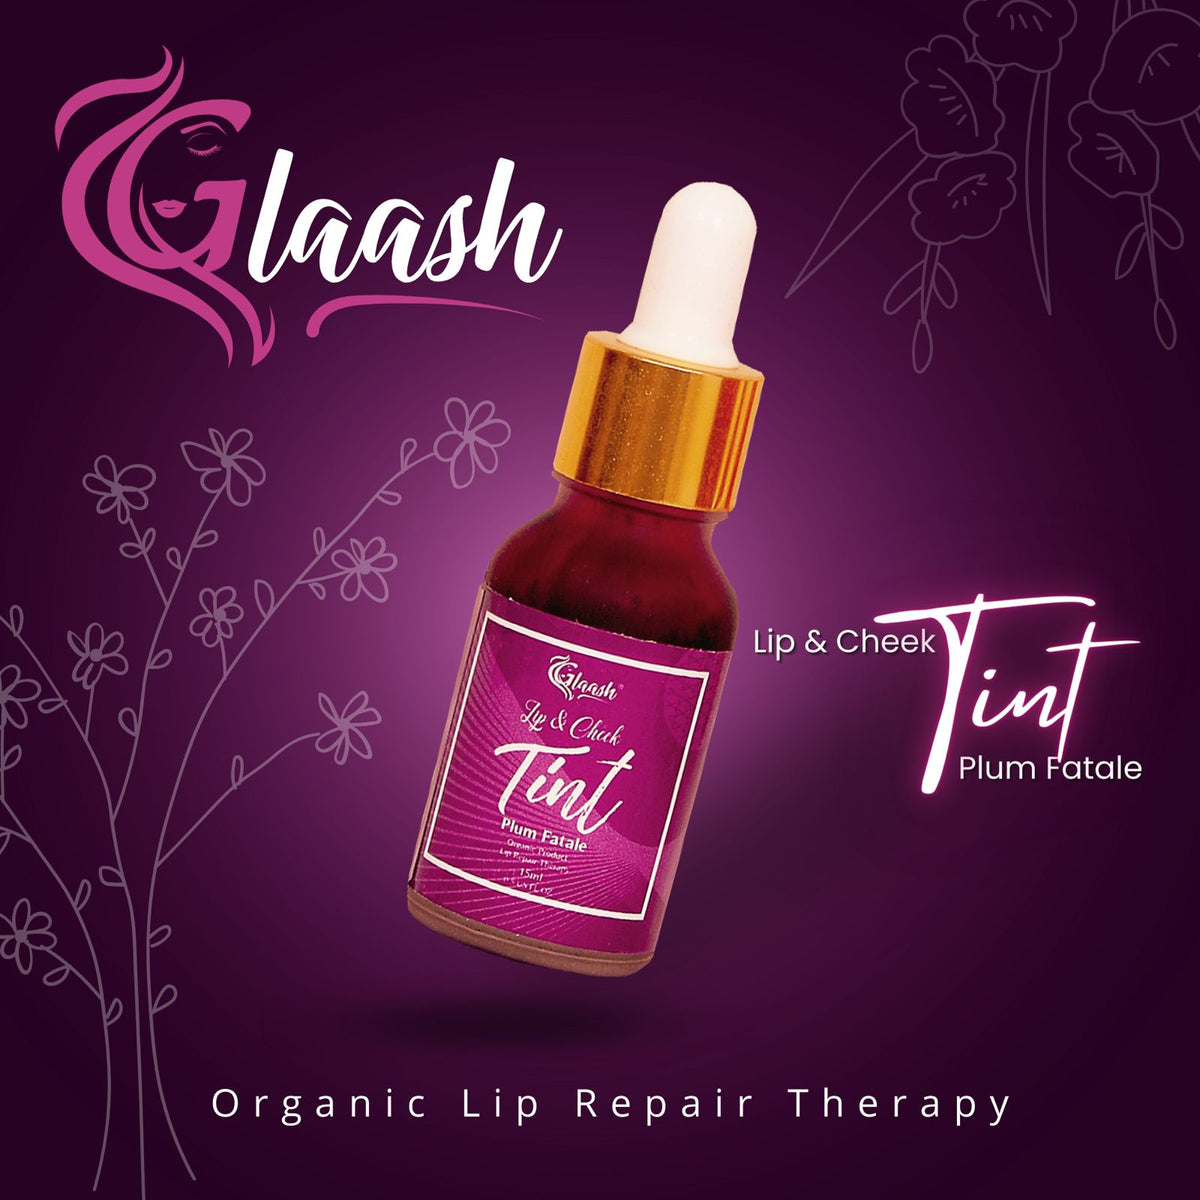 Glaash Pack of 02 Toner + Tint | Moringa Toner for Healthier Skin + Plum Fatale Tint